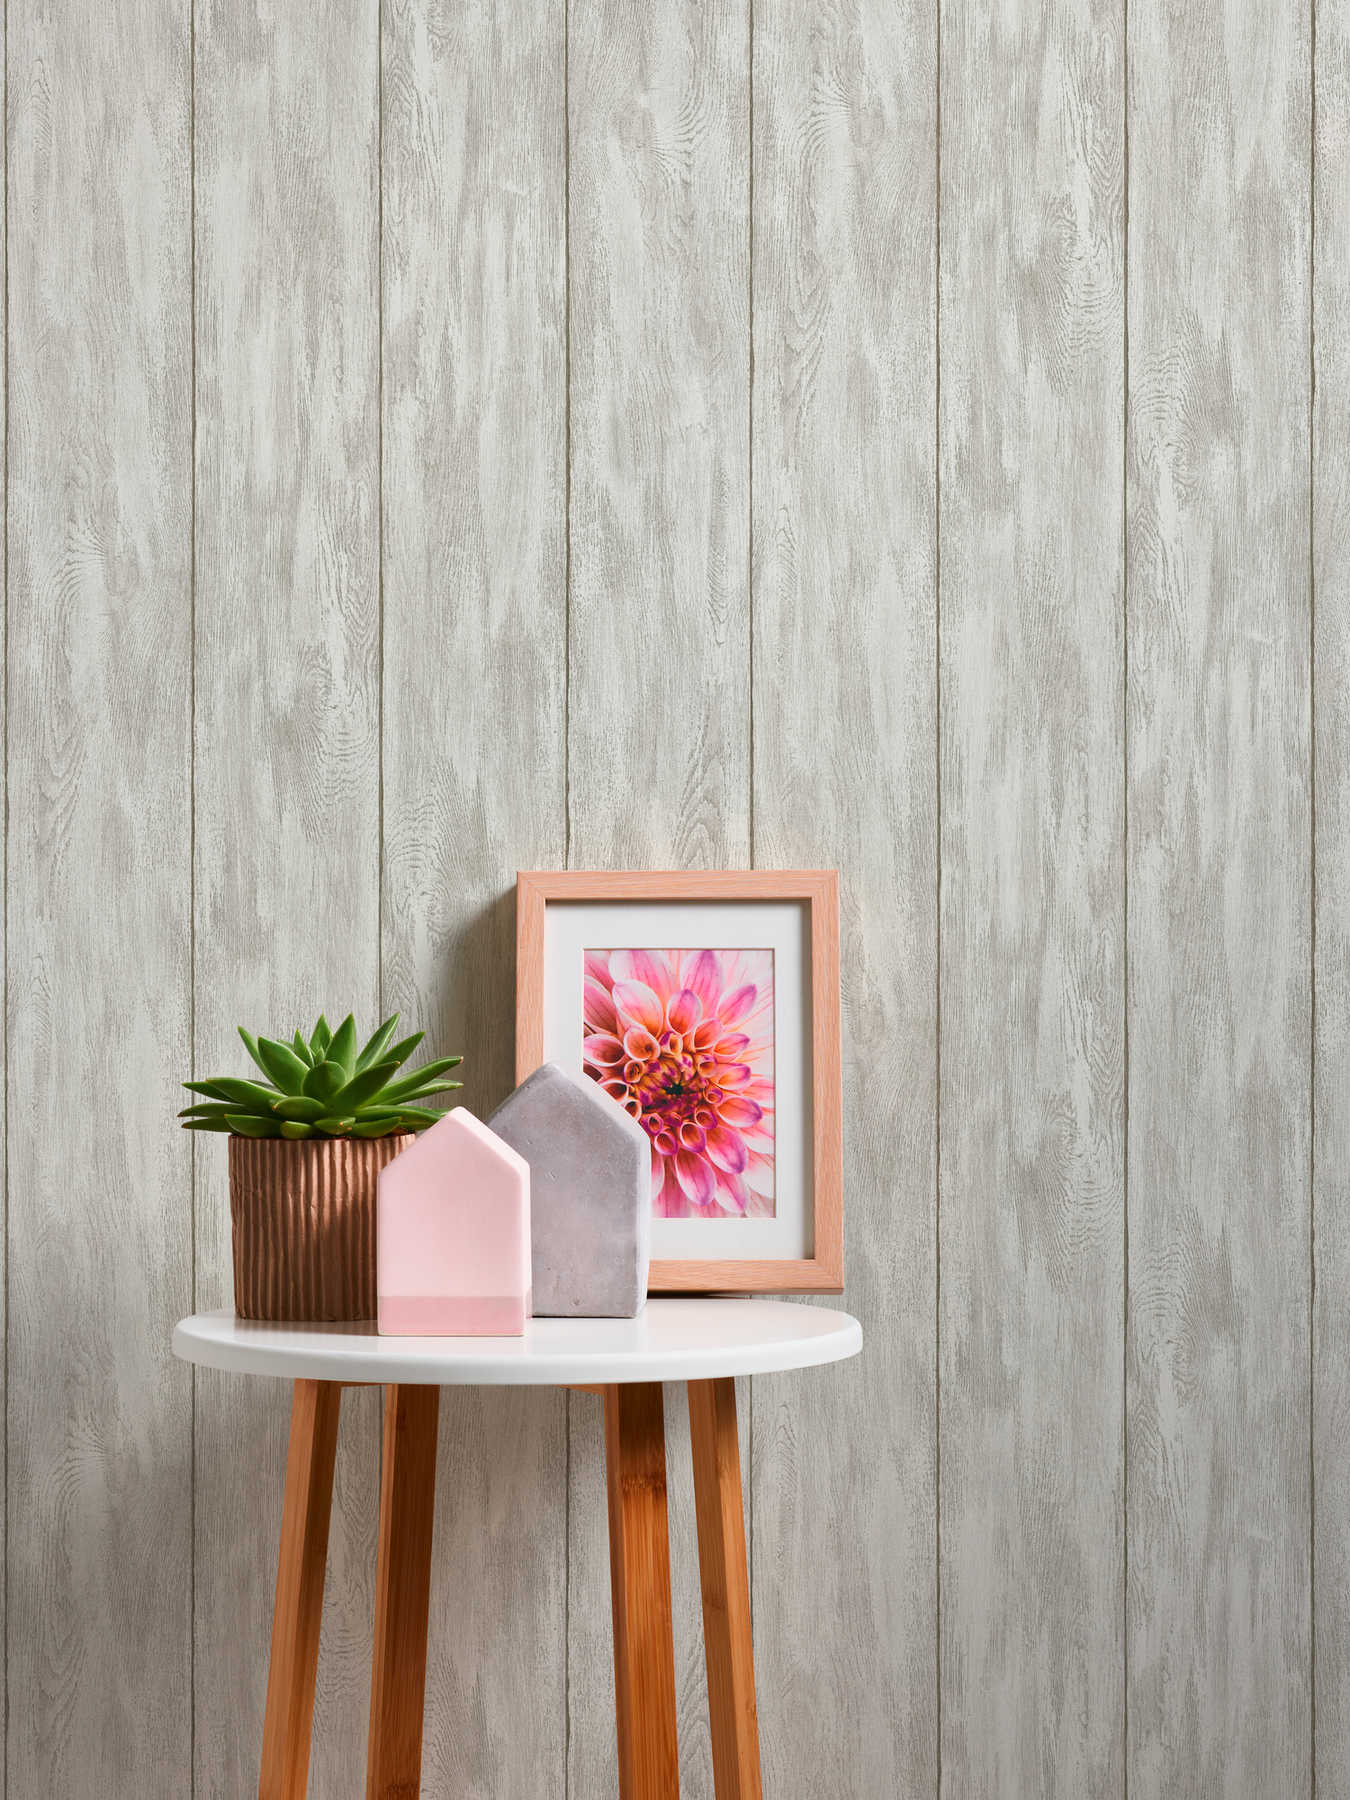             Papel pintado con aspecto de madera para una sensación de casa de campo acogedora: beige, crema, gris
        